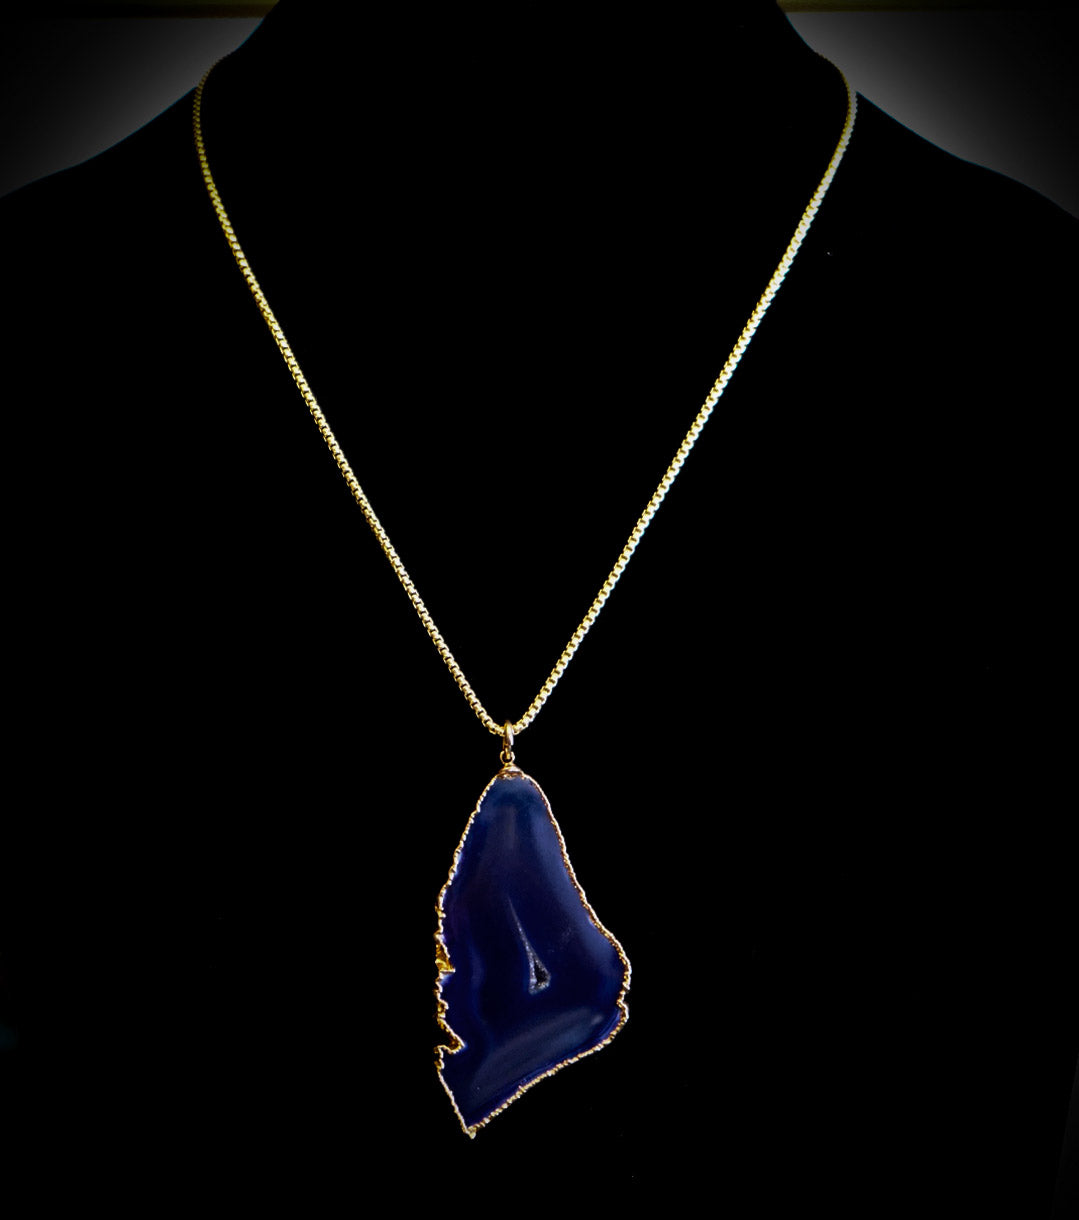 Deep Indigo Blue Druzy Geode Quartz and Gold Plate Pendant Necklace